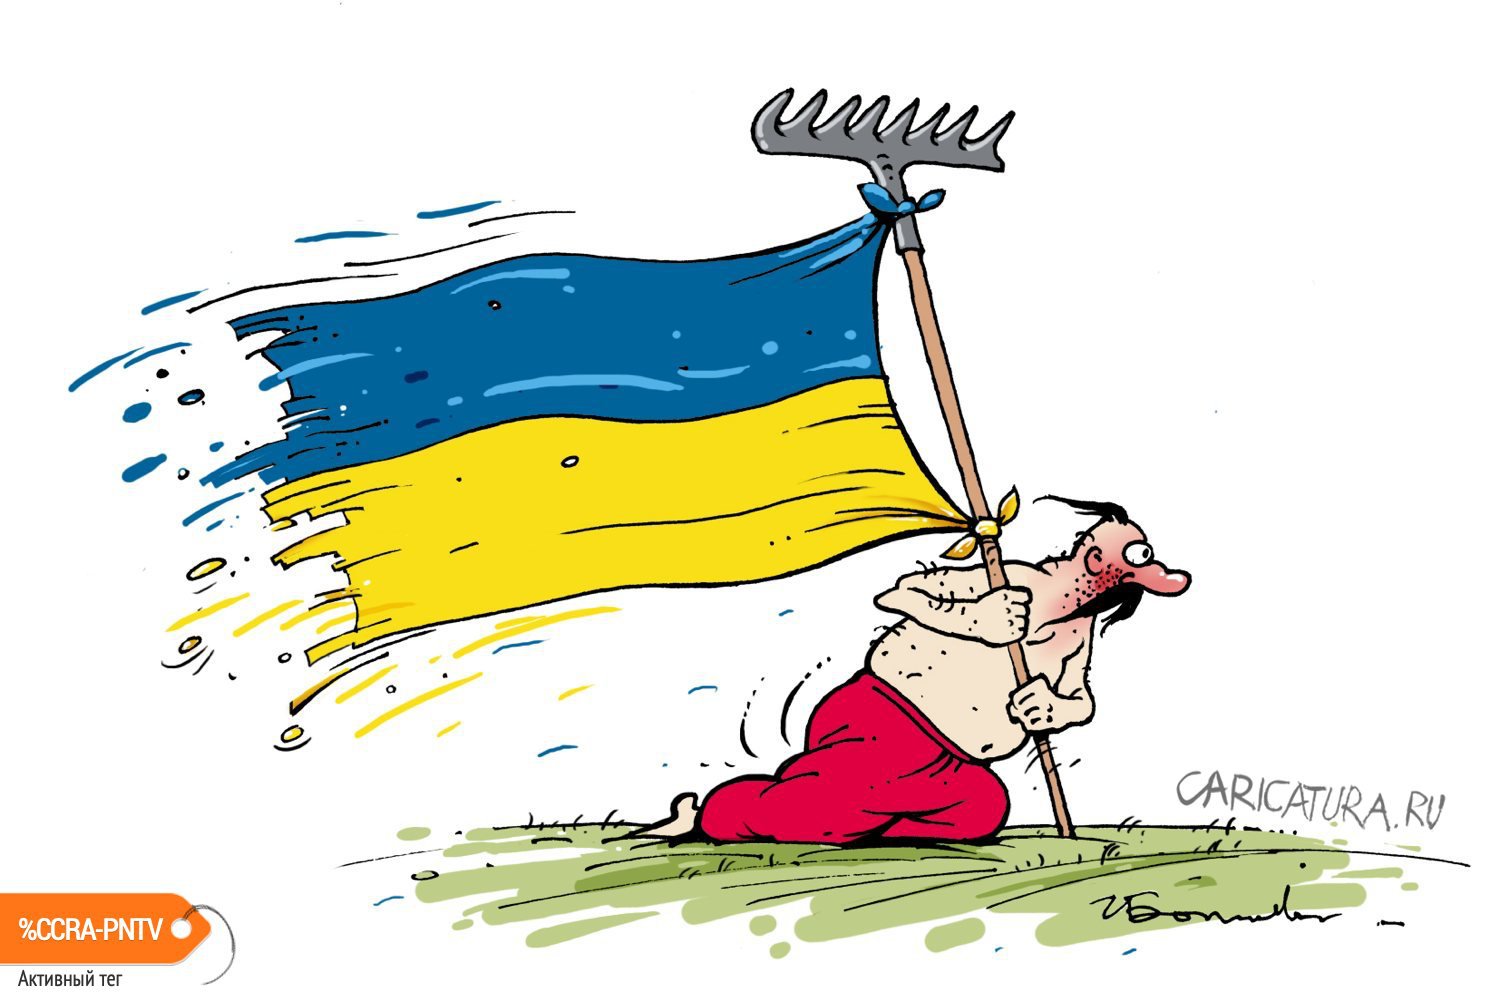 Карикатура "Парень с граблями", Игорь Елистратов